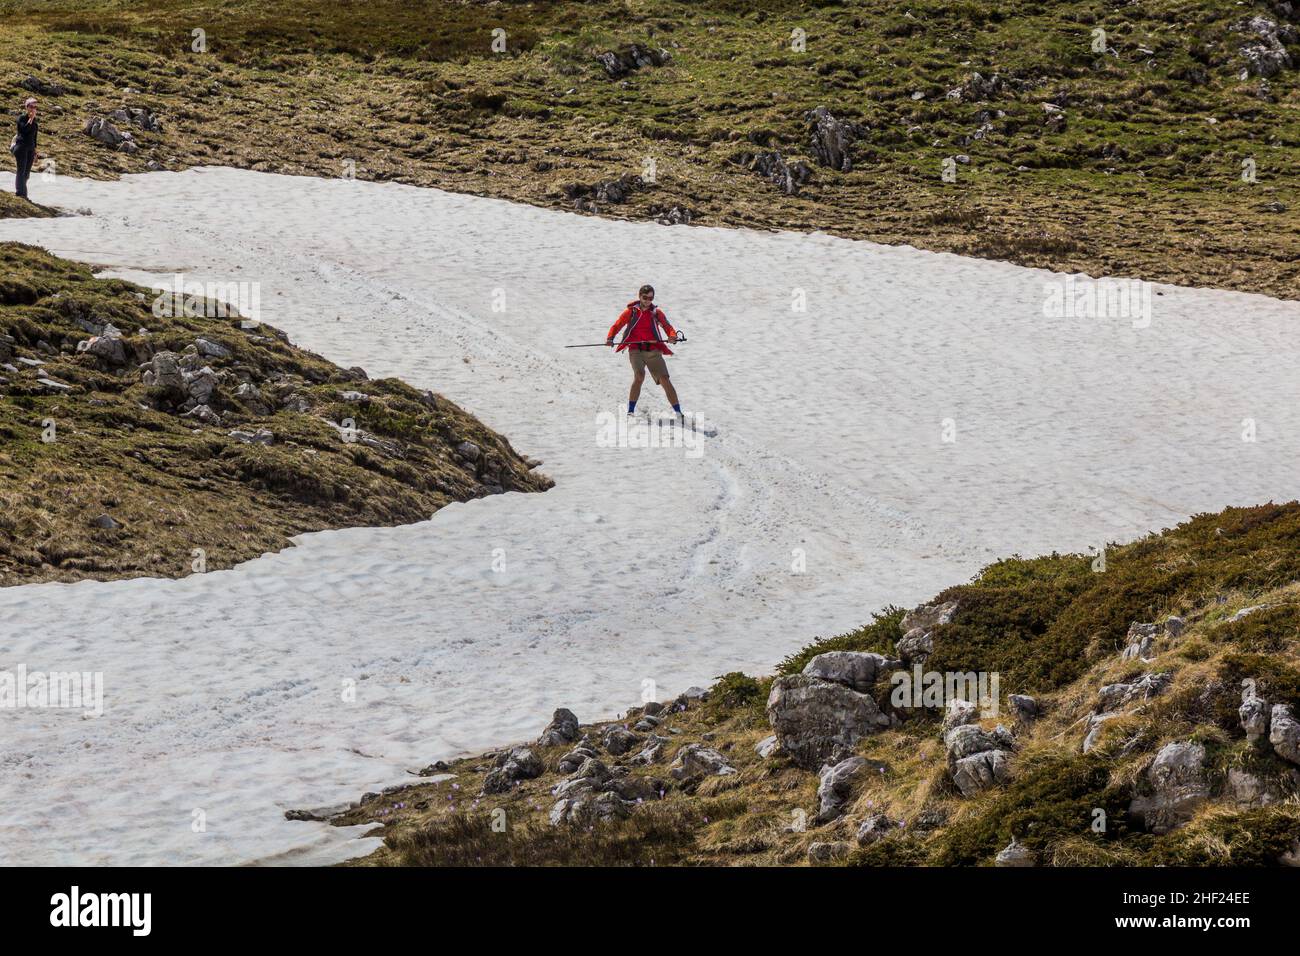 DURMITOR, MONTENEGRO - 6 DE JUNIO de 2019: Excursionista disfrutando de la nieve en el parque nacional Durmitor, Montenegro. Foto de stock